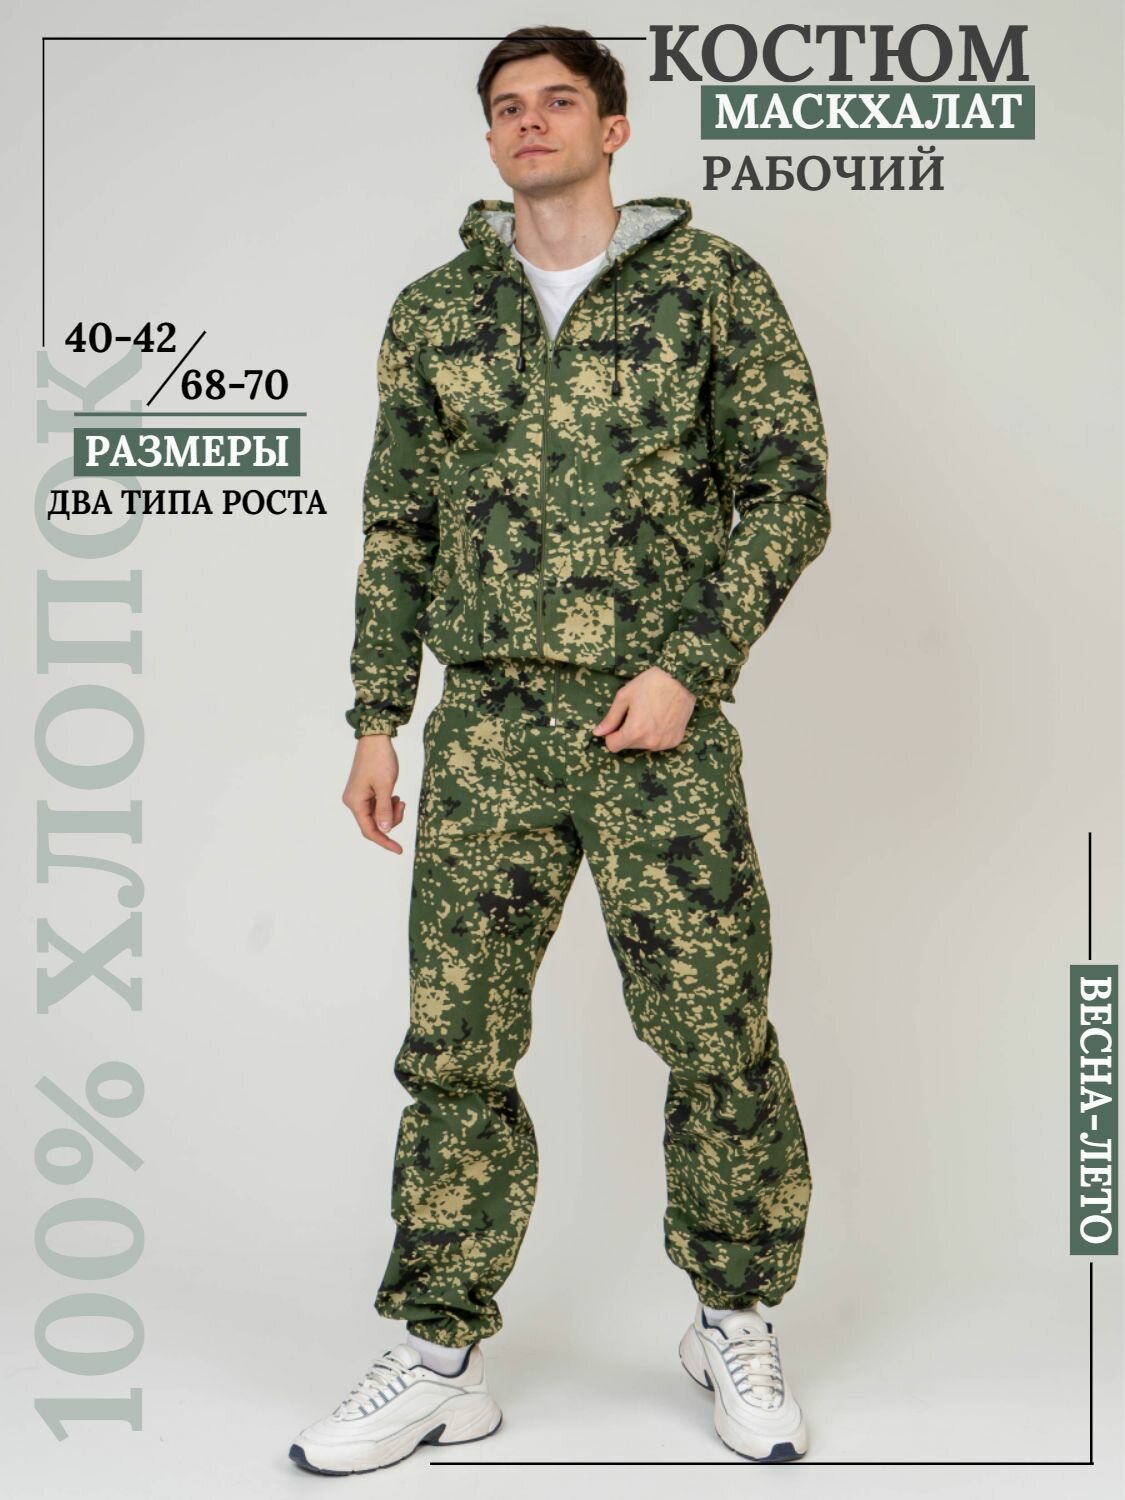 Костюм мужской камуфляжный для рыбалки и активного отдыха ПромДизайн (куртка+брюки), 100% хлопок/ Костюм маскировочный, 48-182RU